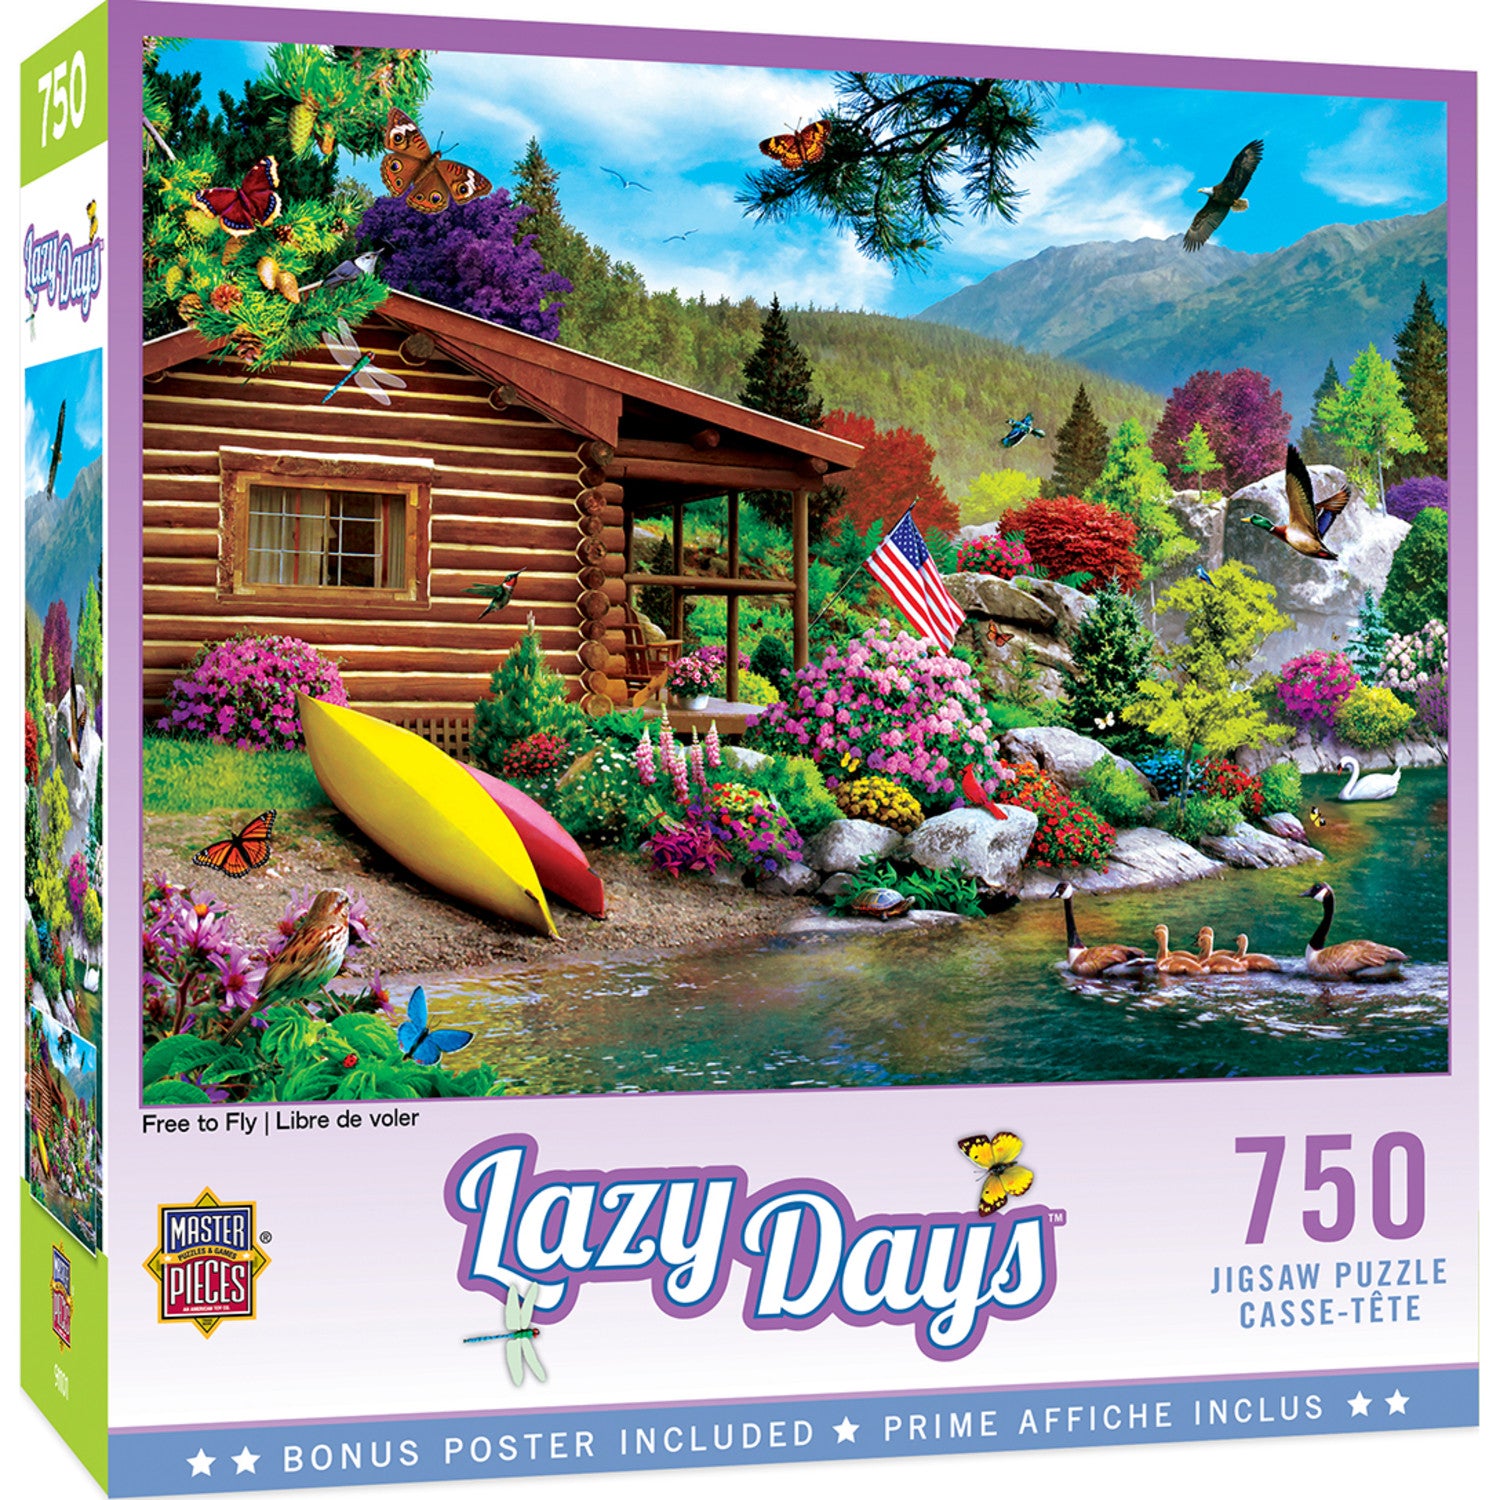 Lazy Days - Free to Fly 750 Piece Jigsaw Puzzle